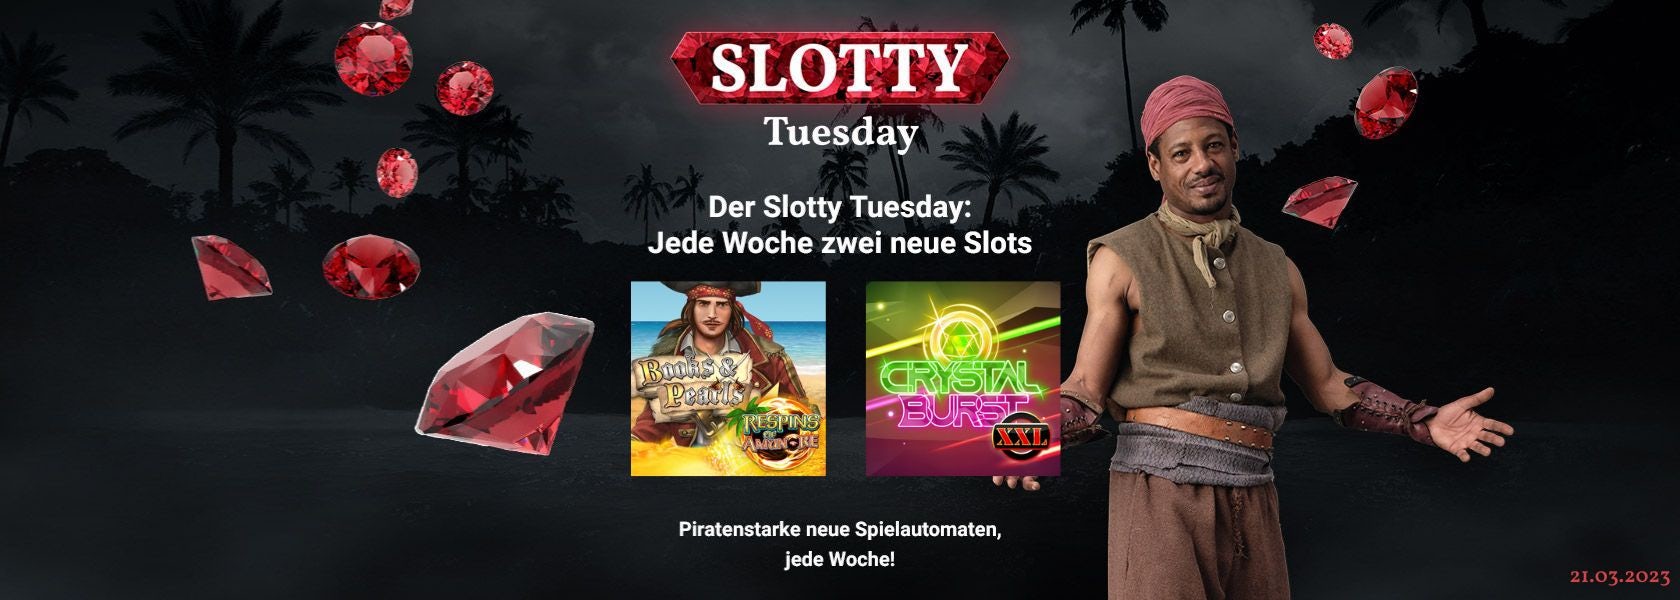 JPI-Header-Slotty-Tuesday-2103